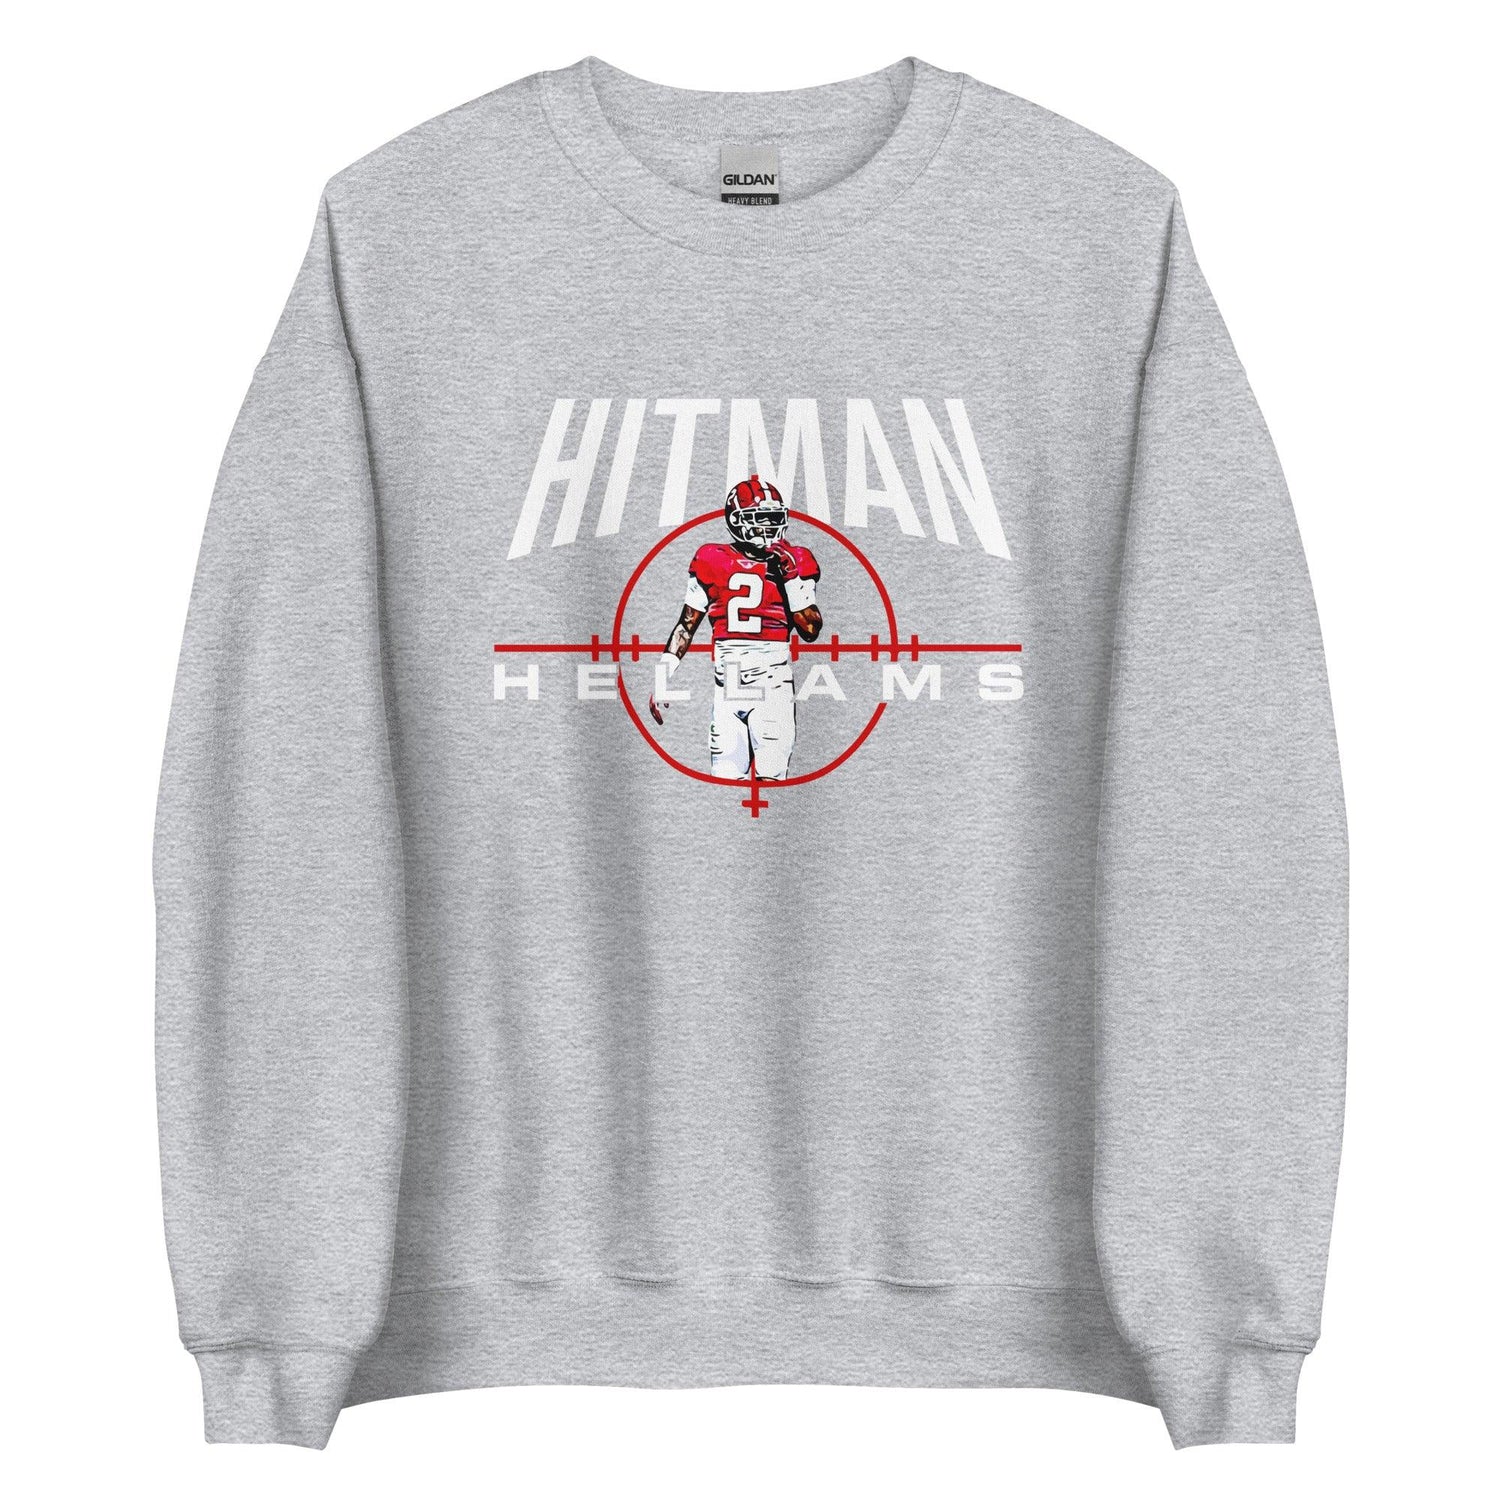 DeMarcco Hellams "Hitman" Sweatshirt - Fan Arch